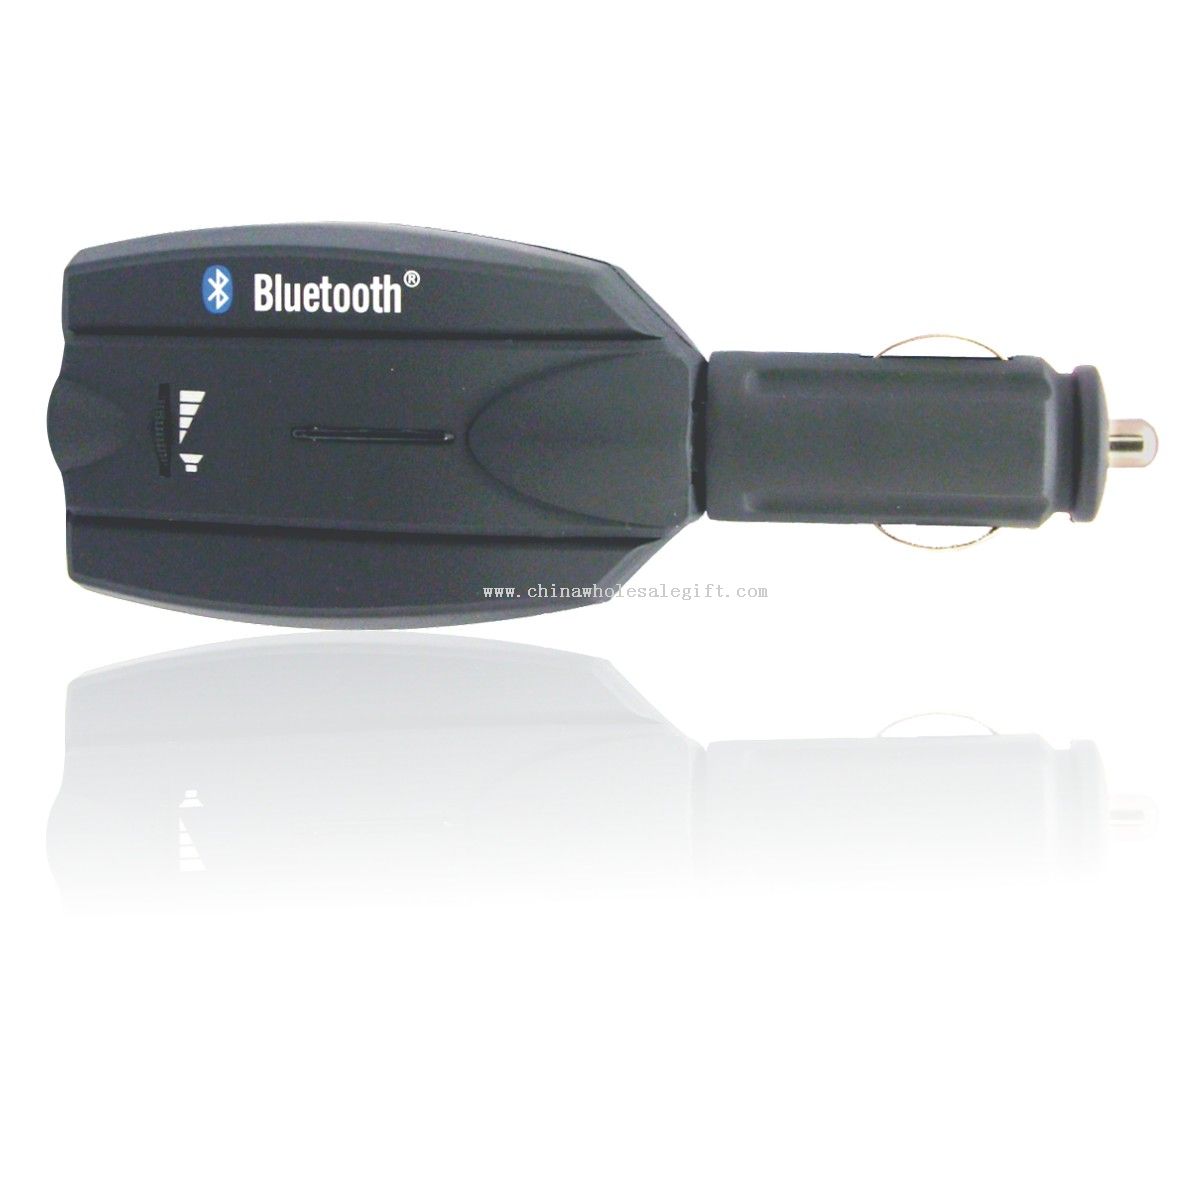 2.4 GHz wireless Bluetooth Car Kit